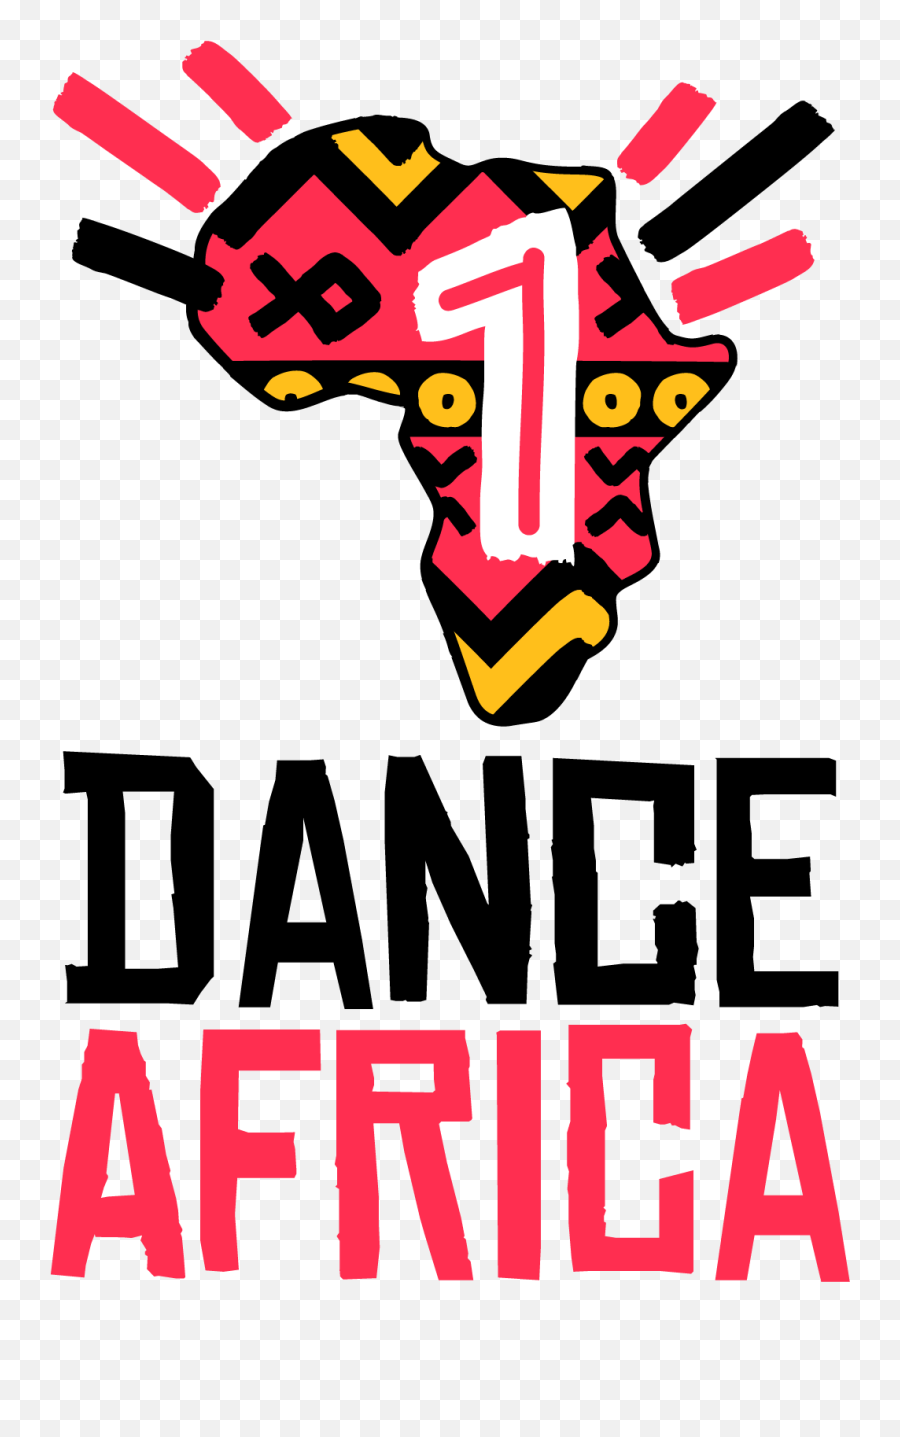 Dj Tunez - 1dance Africa Png,Starboy Logo